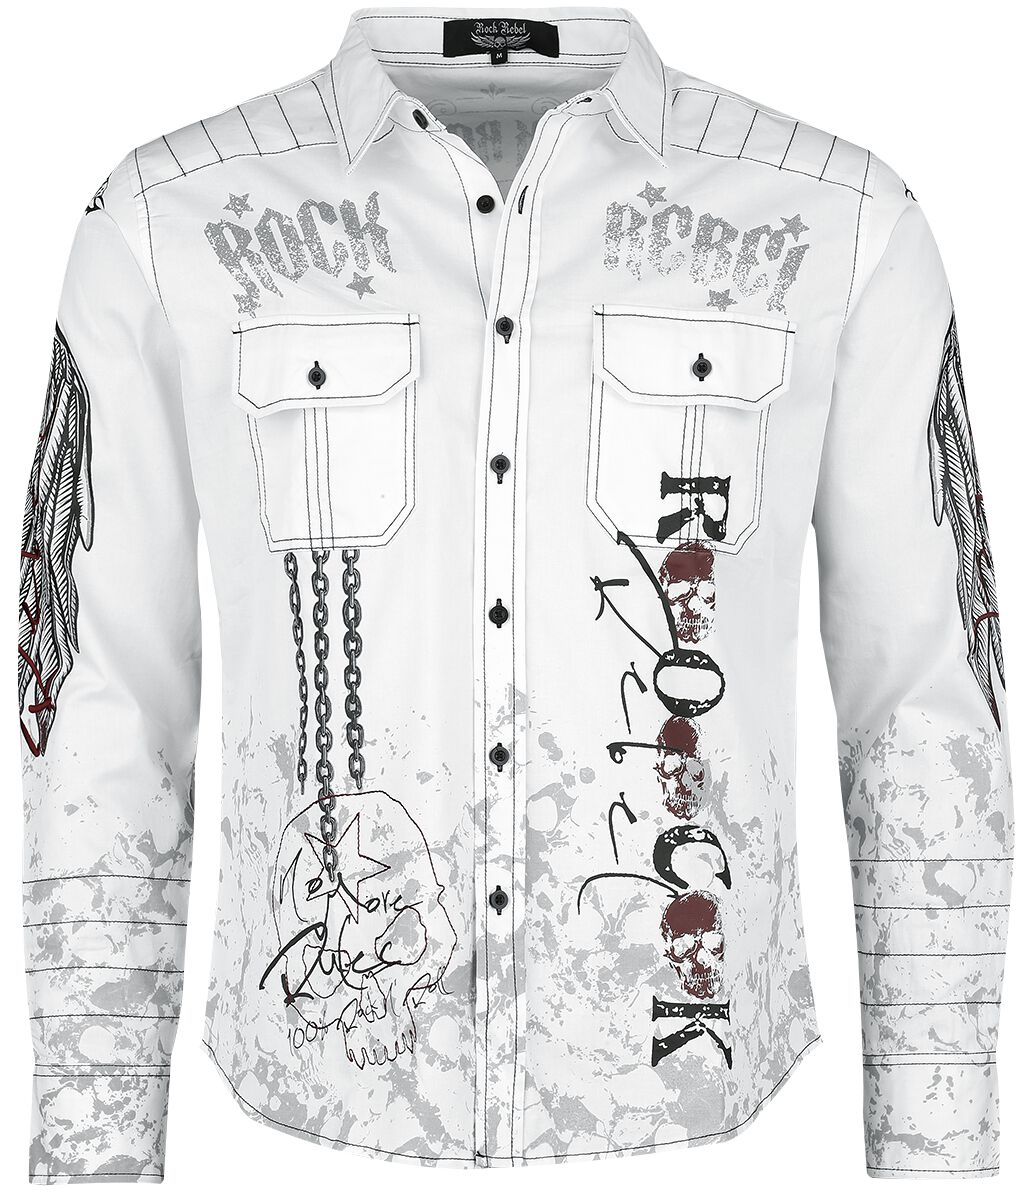 Rock Rebel by EMP - Rock Langarmhemd - Shirt with Rock Rebel Prints - M - für Männer - Größe M - weiß